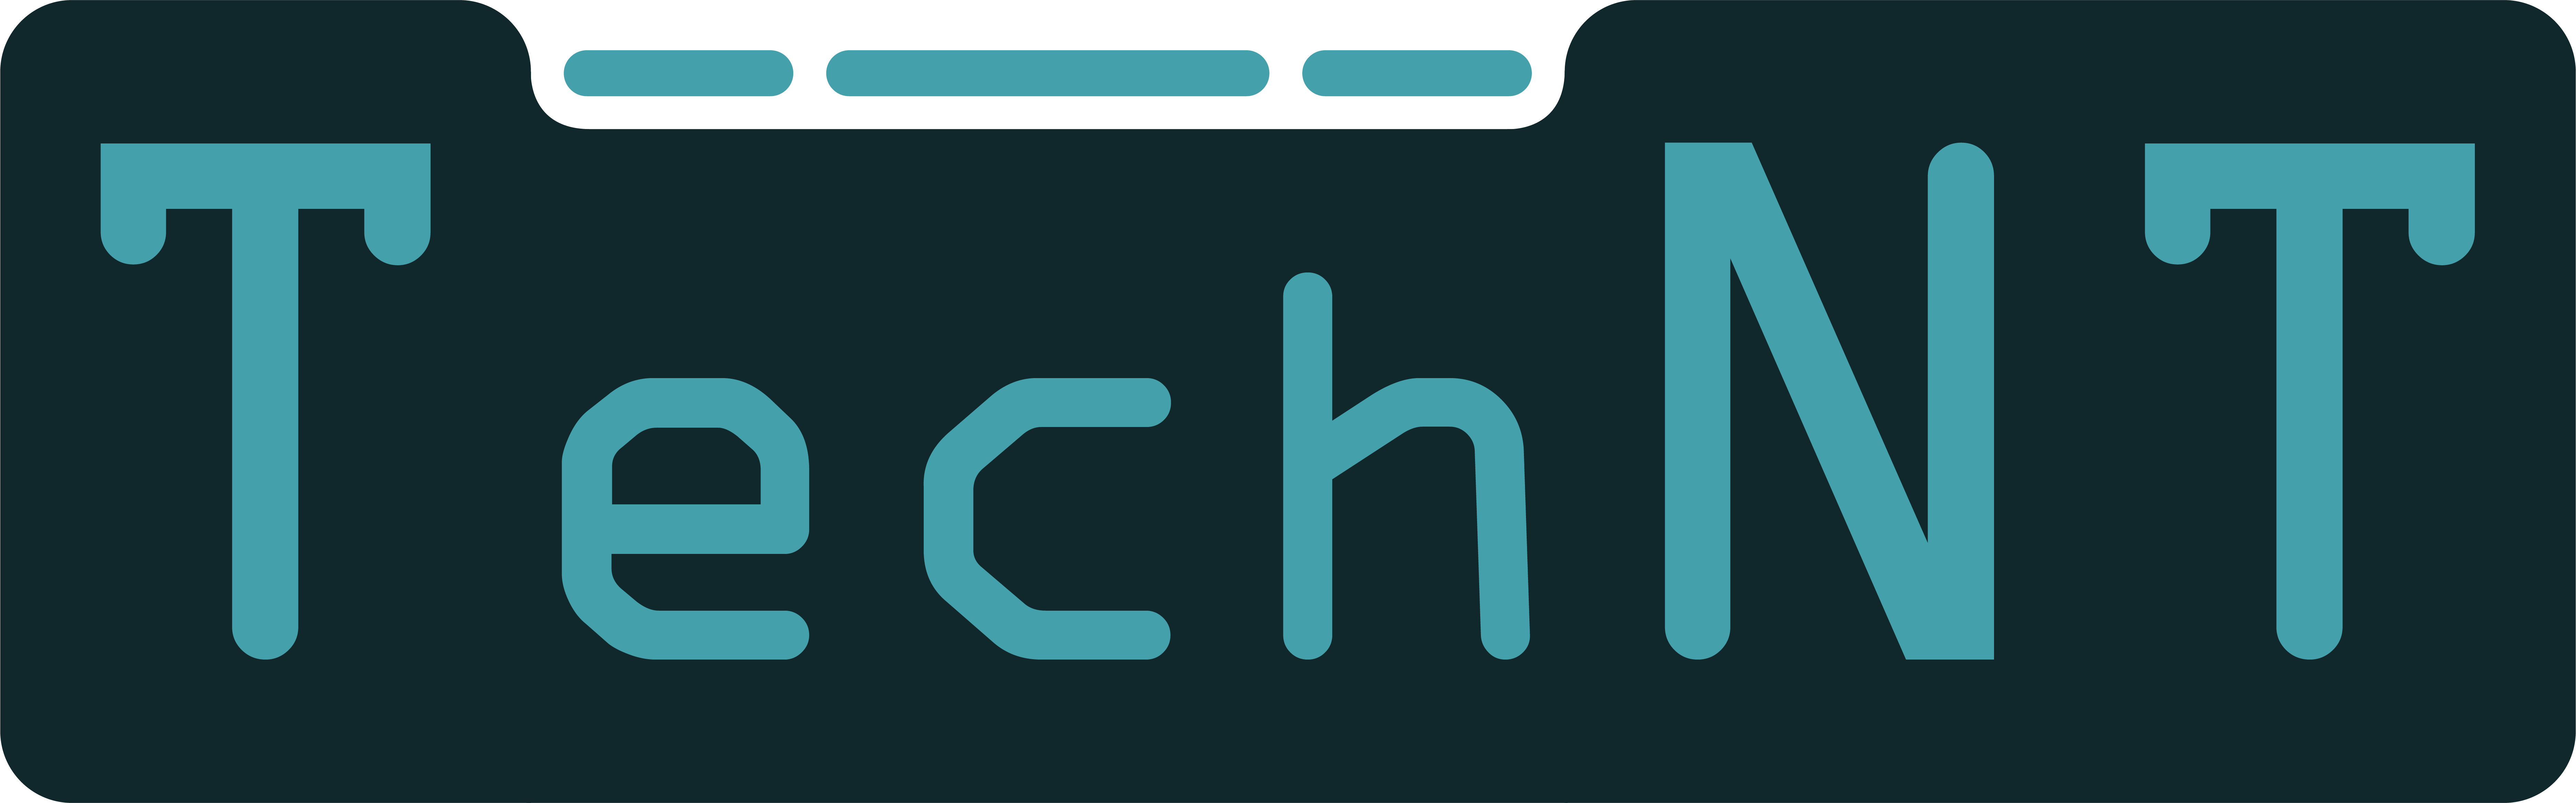 Technt.net